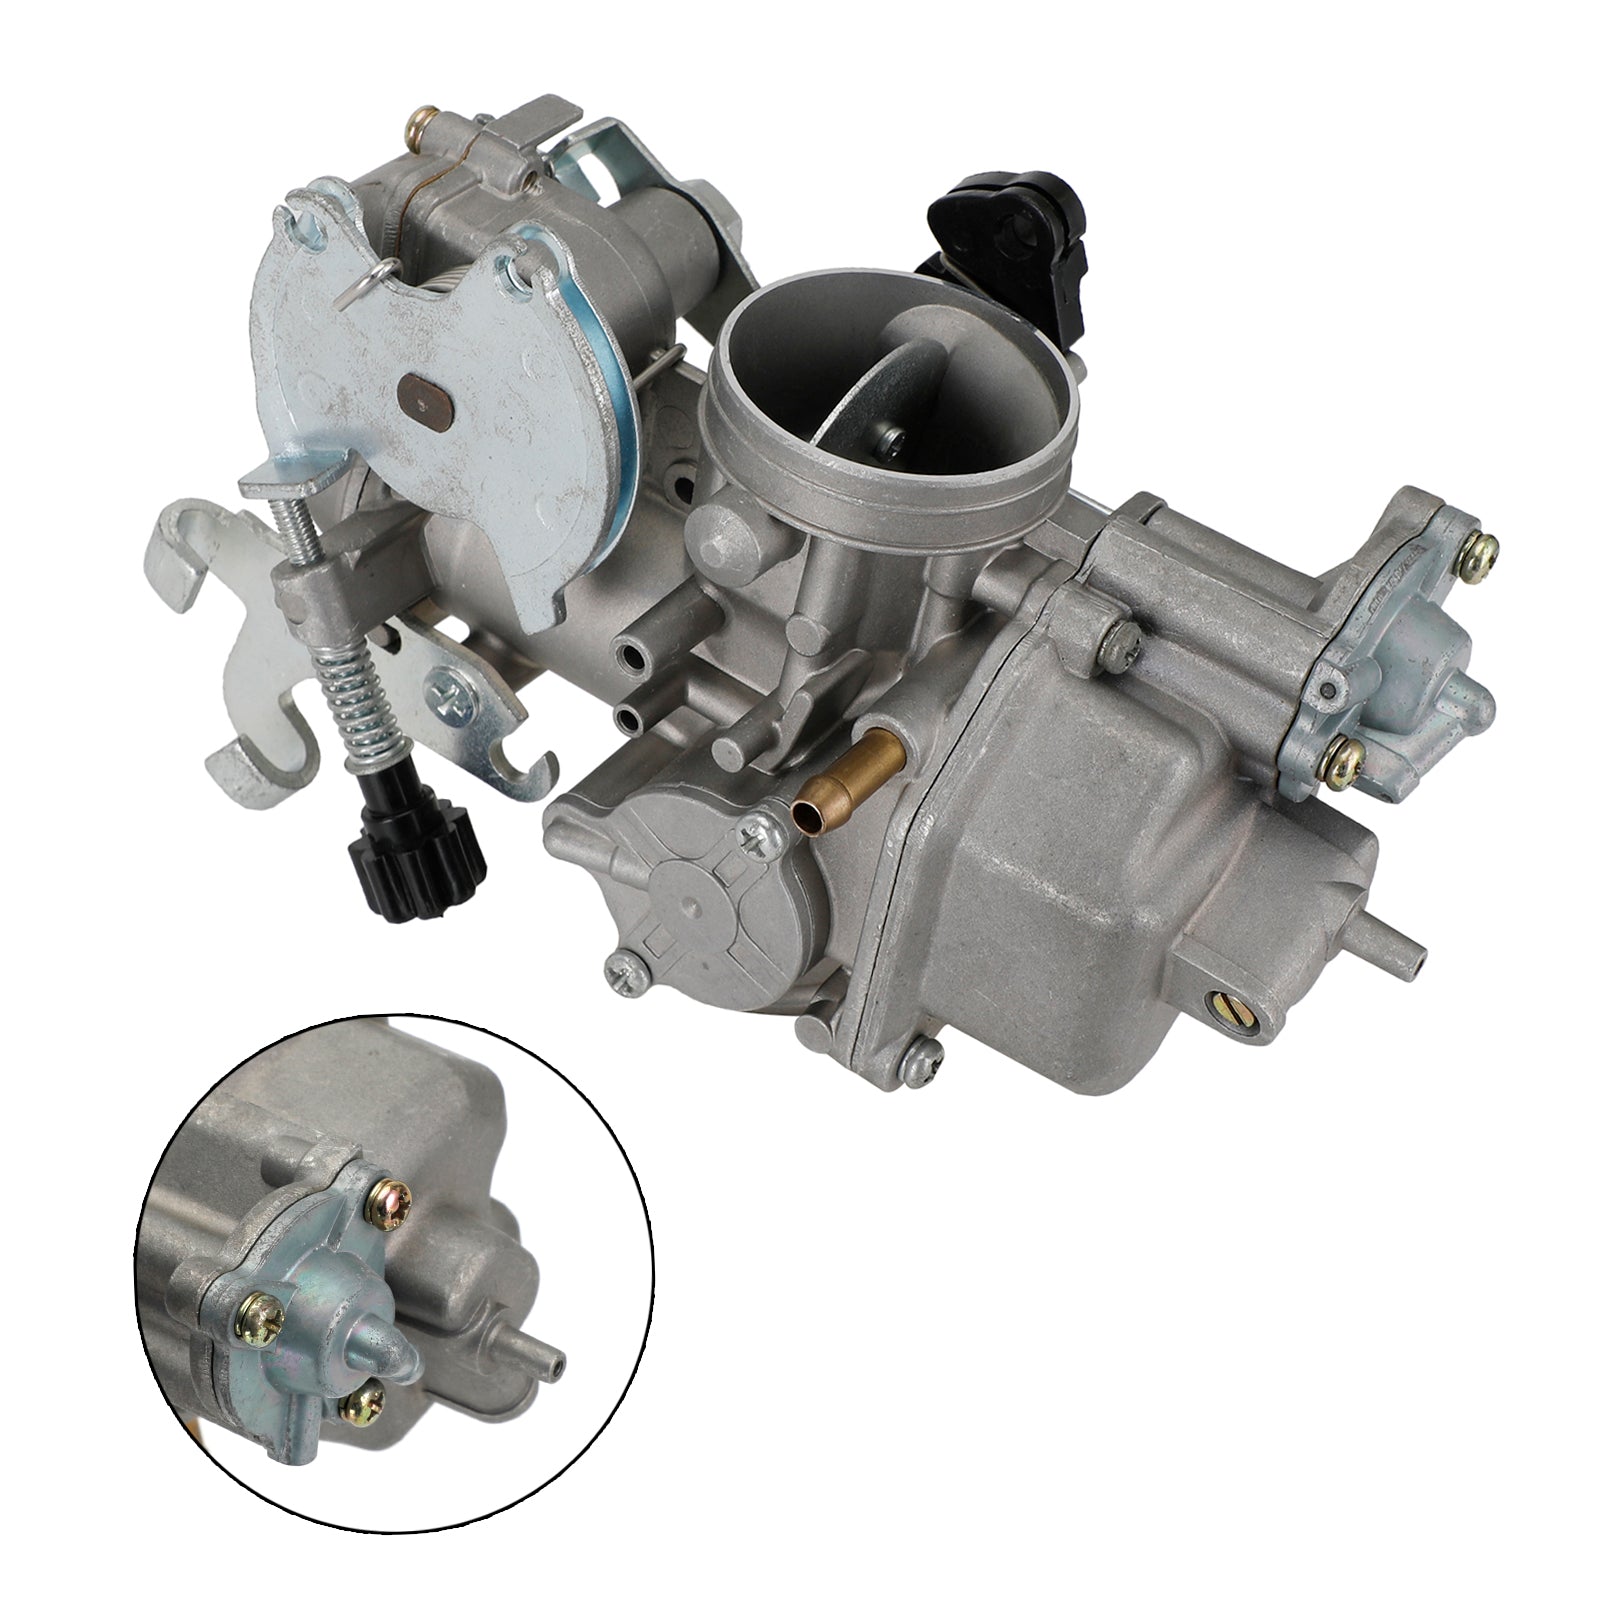 Carburetor Carb fit for Honda CRF230 F 230F 2003 2004 2005 Replace 16100-KPS-901